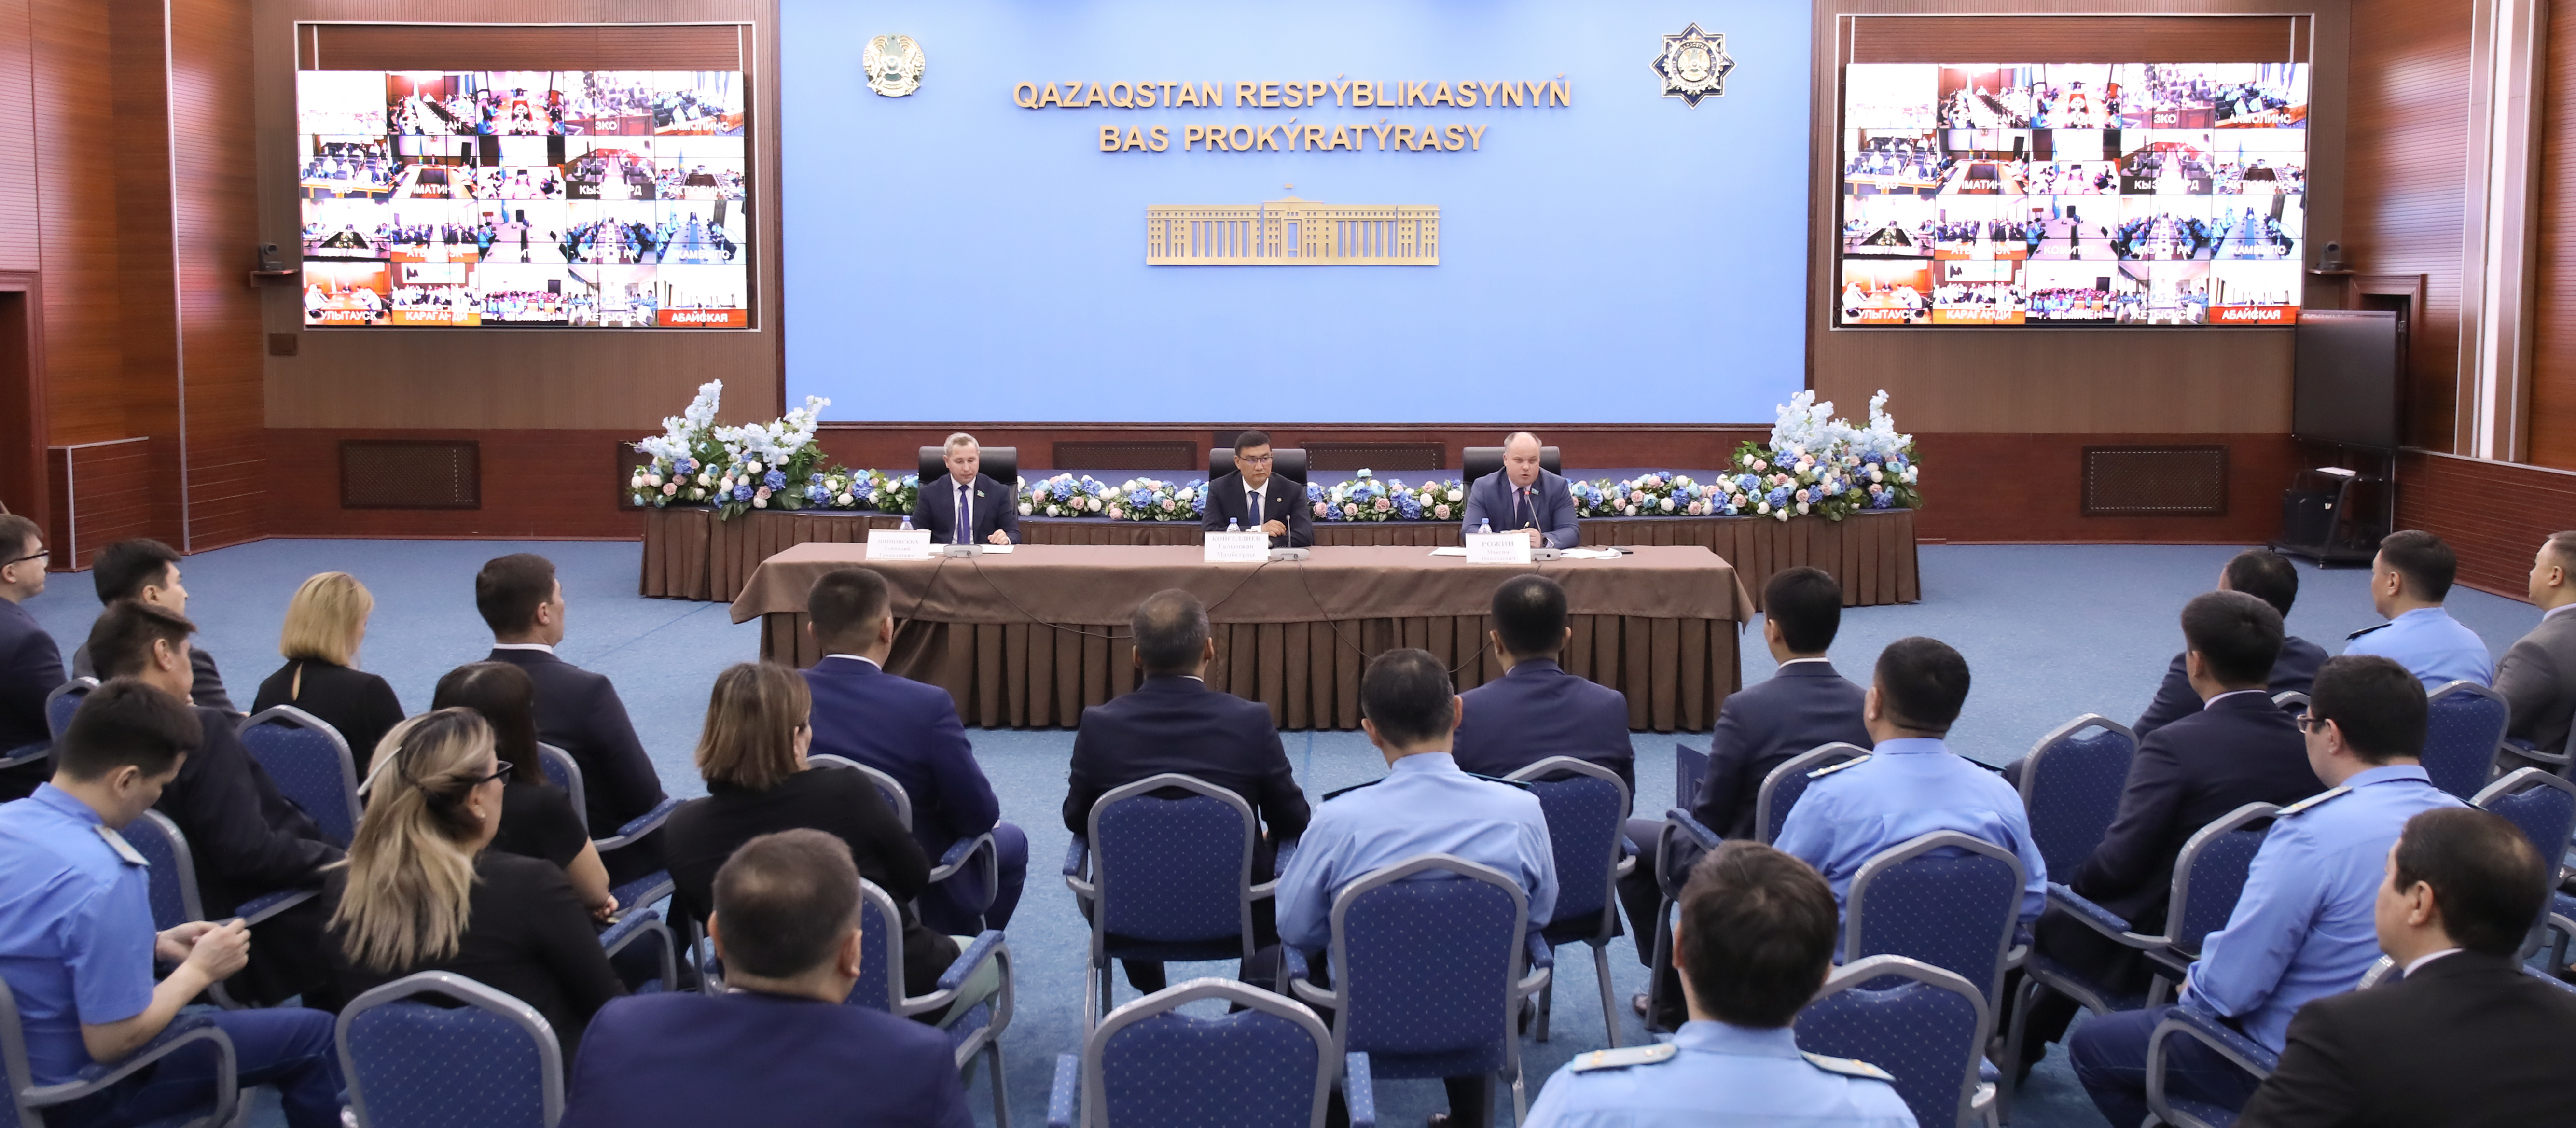 В честь Дня единства народа Казахстана